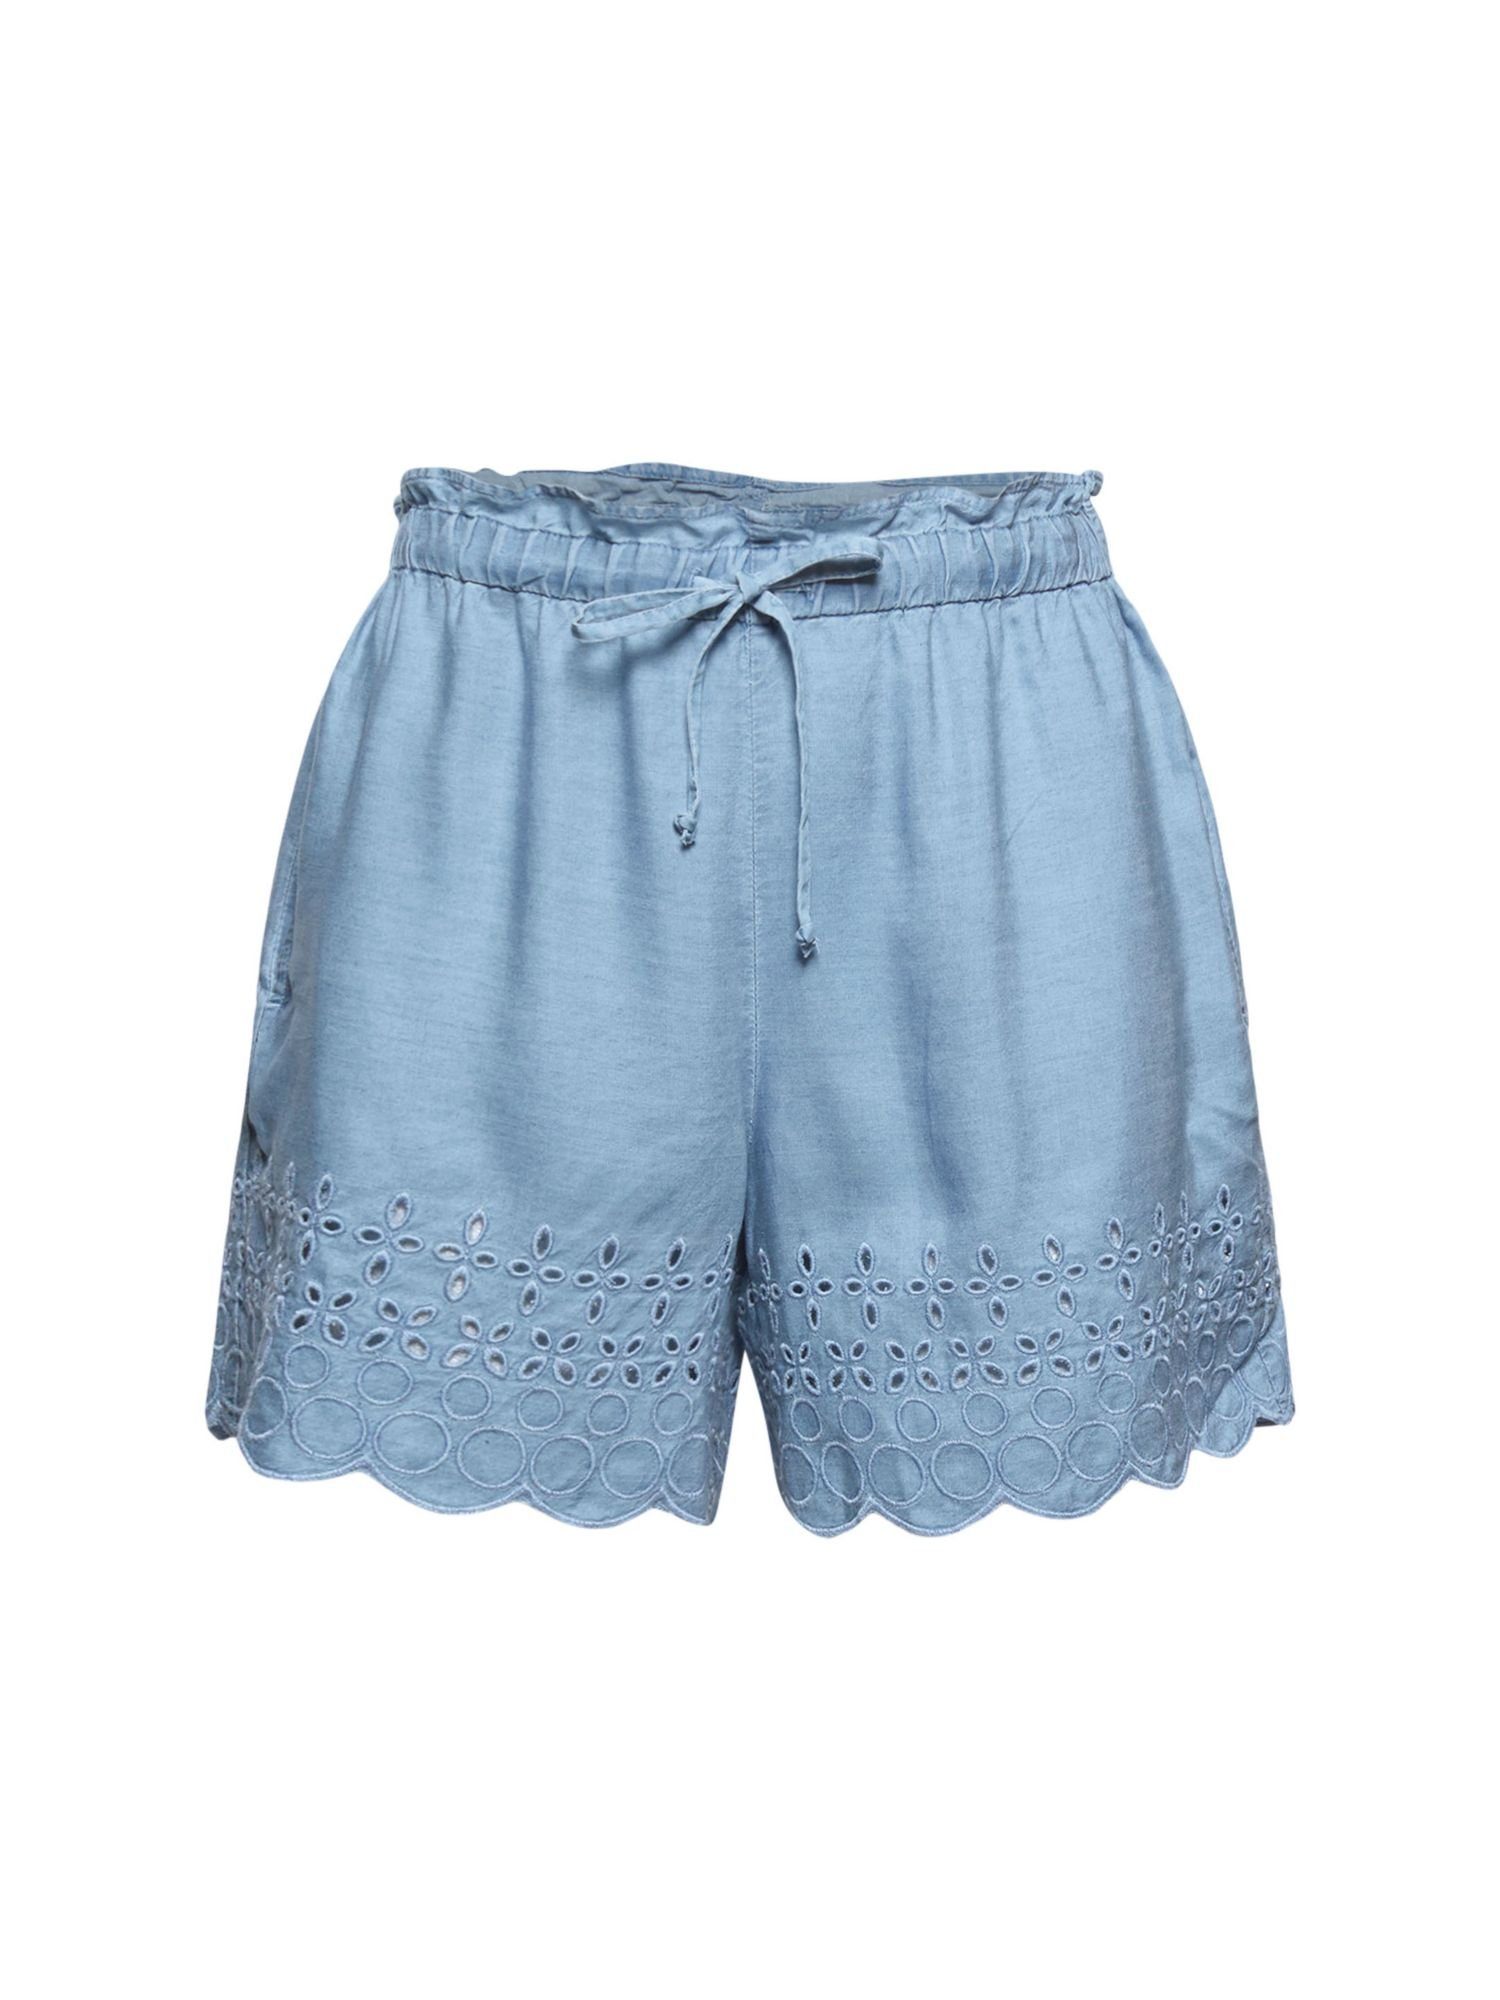 Esprit Damen-Shorts online kaufen | OTTO